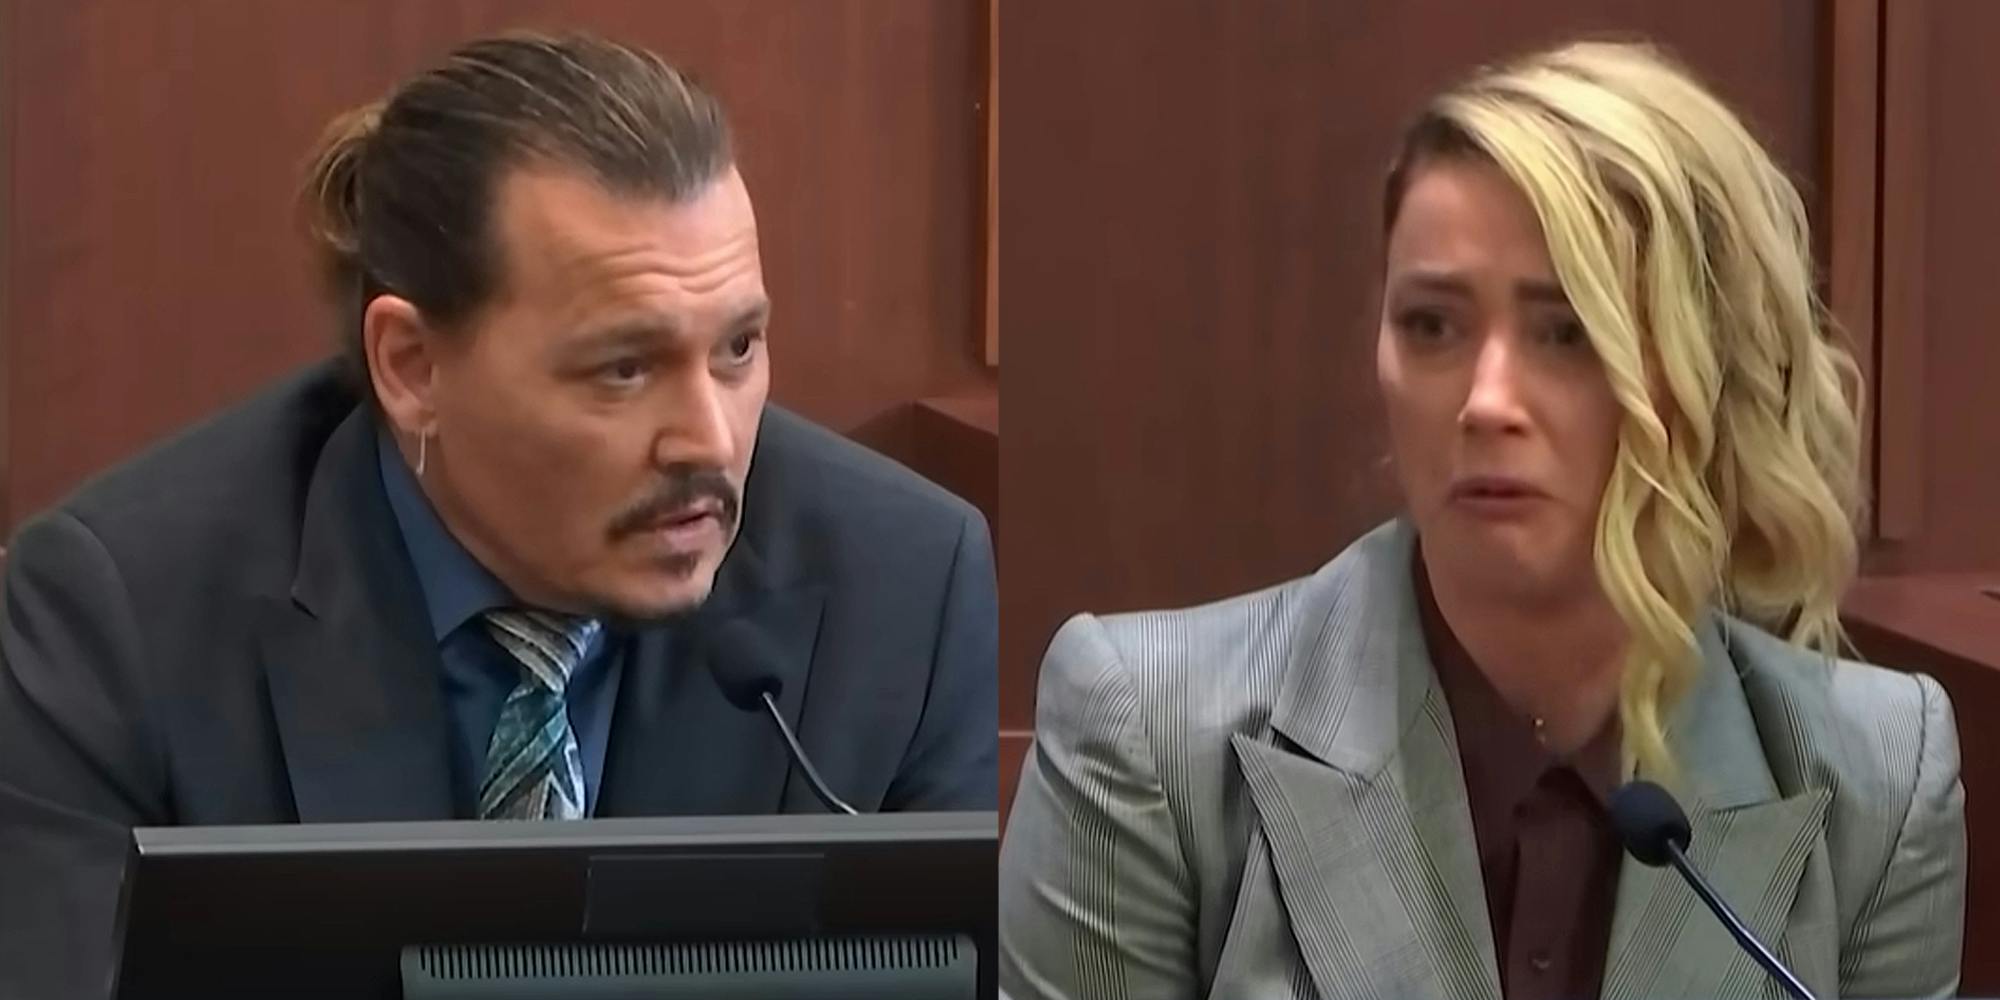 Johnny Depp speaking in court (l) Amber Heard speaking in court (r)